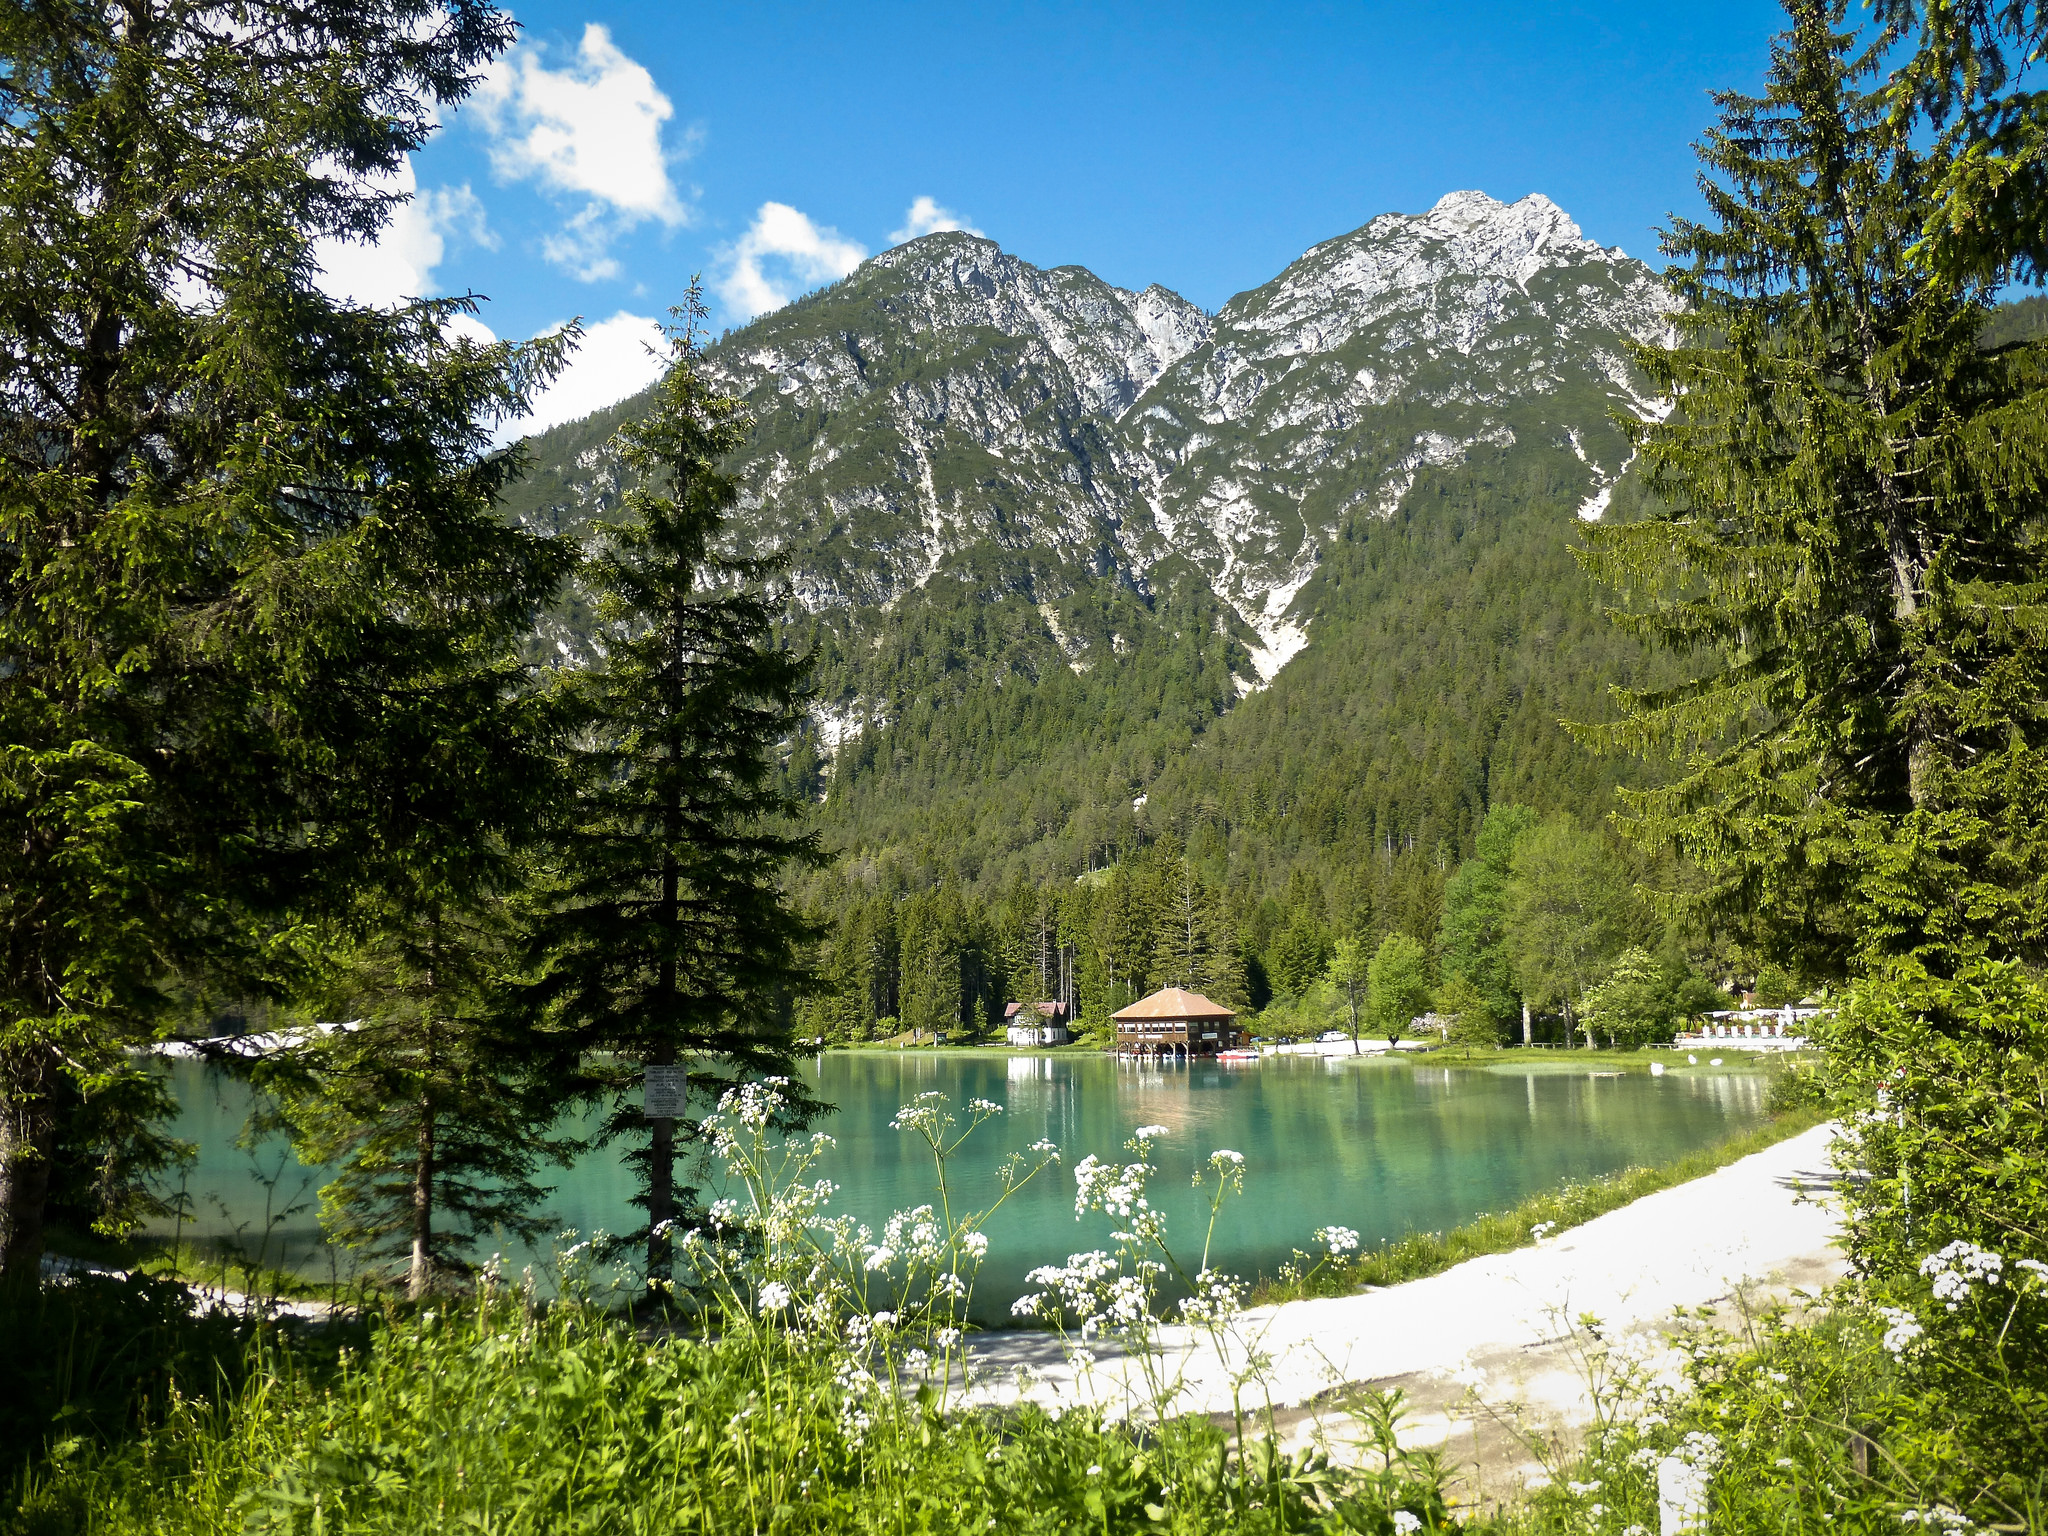 Typical Dolomites landscape